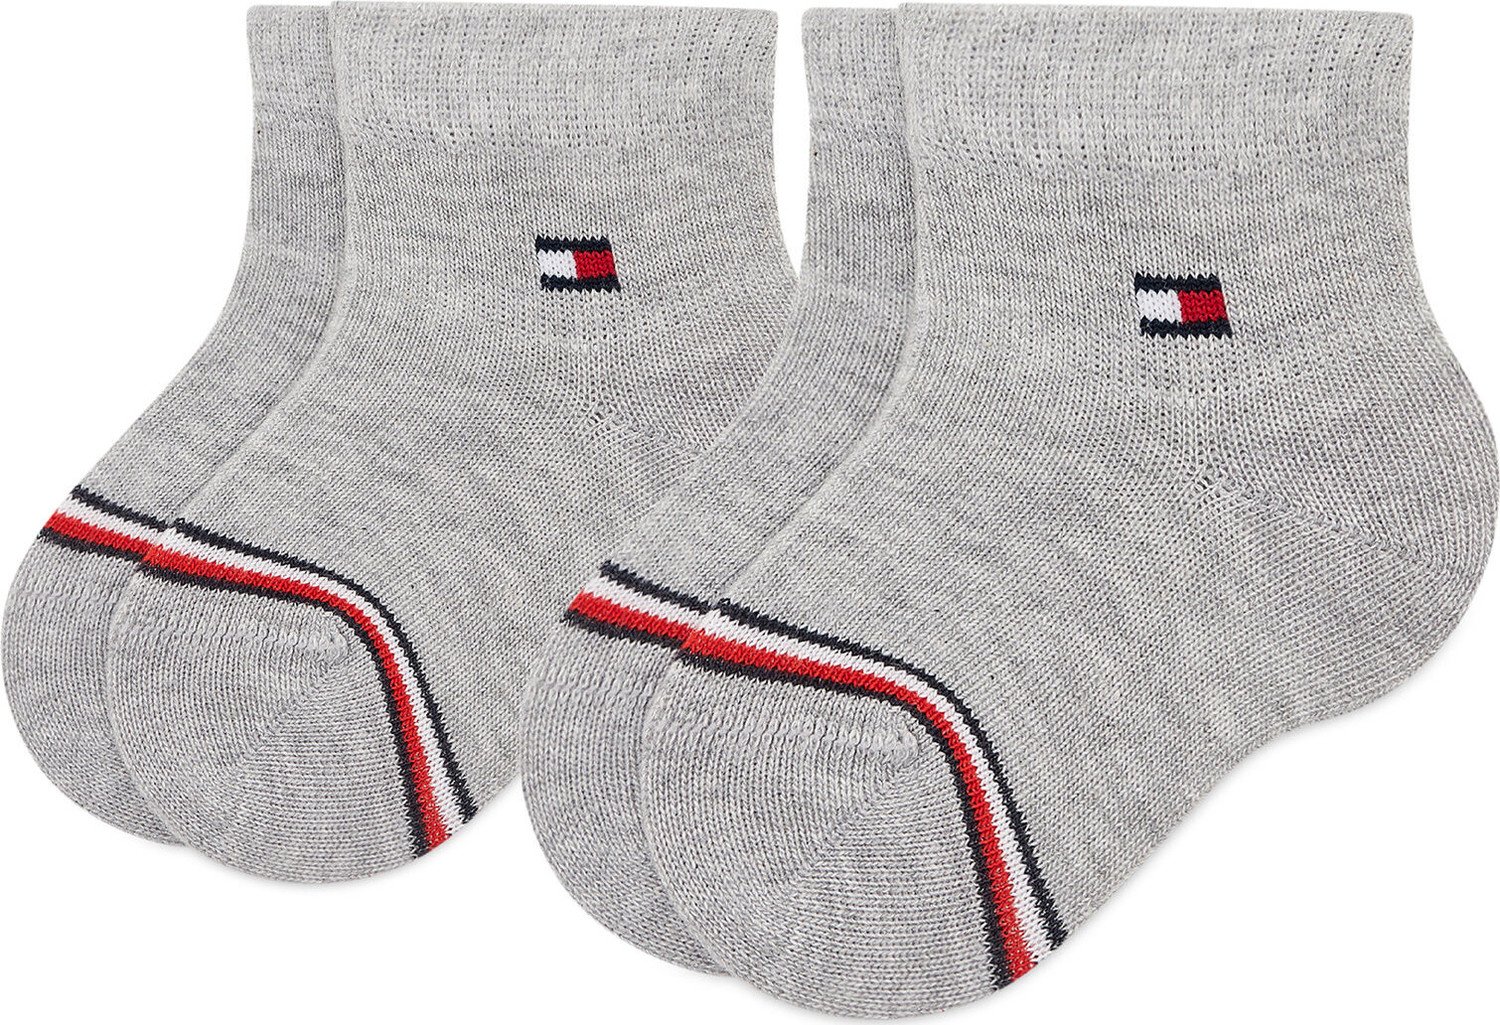 Sada 2 párů dětských vysokých ponožek Tommy Hilfiger 701220516 Mid Grey Melange 003